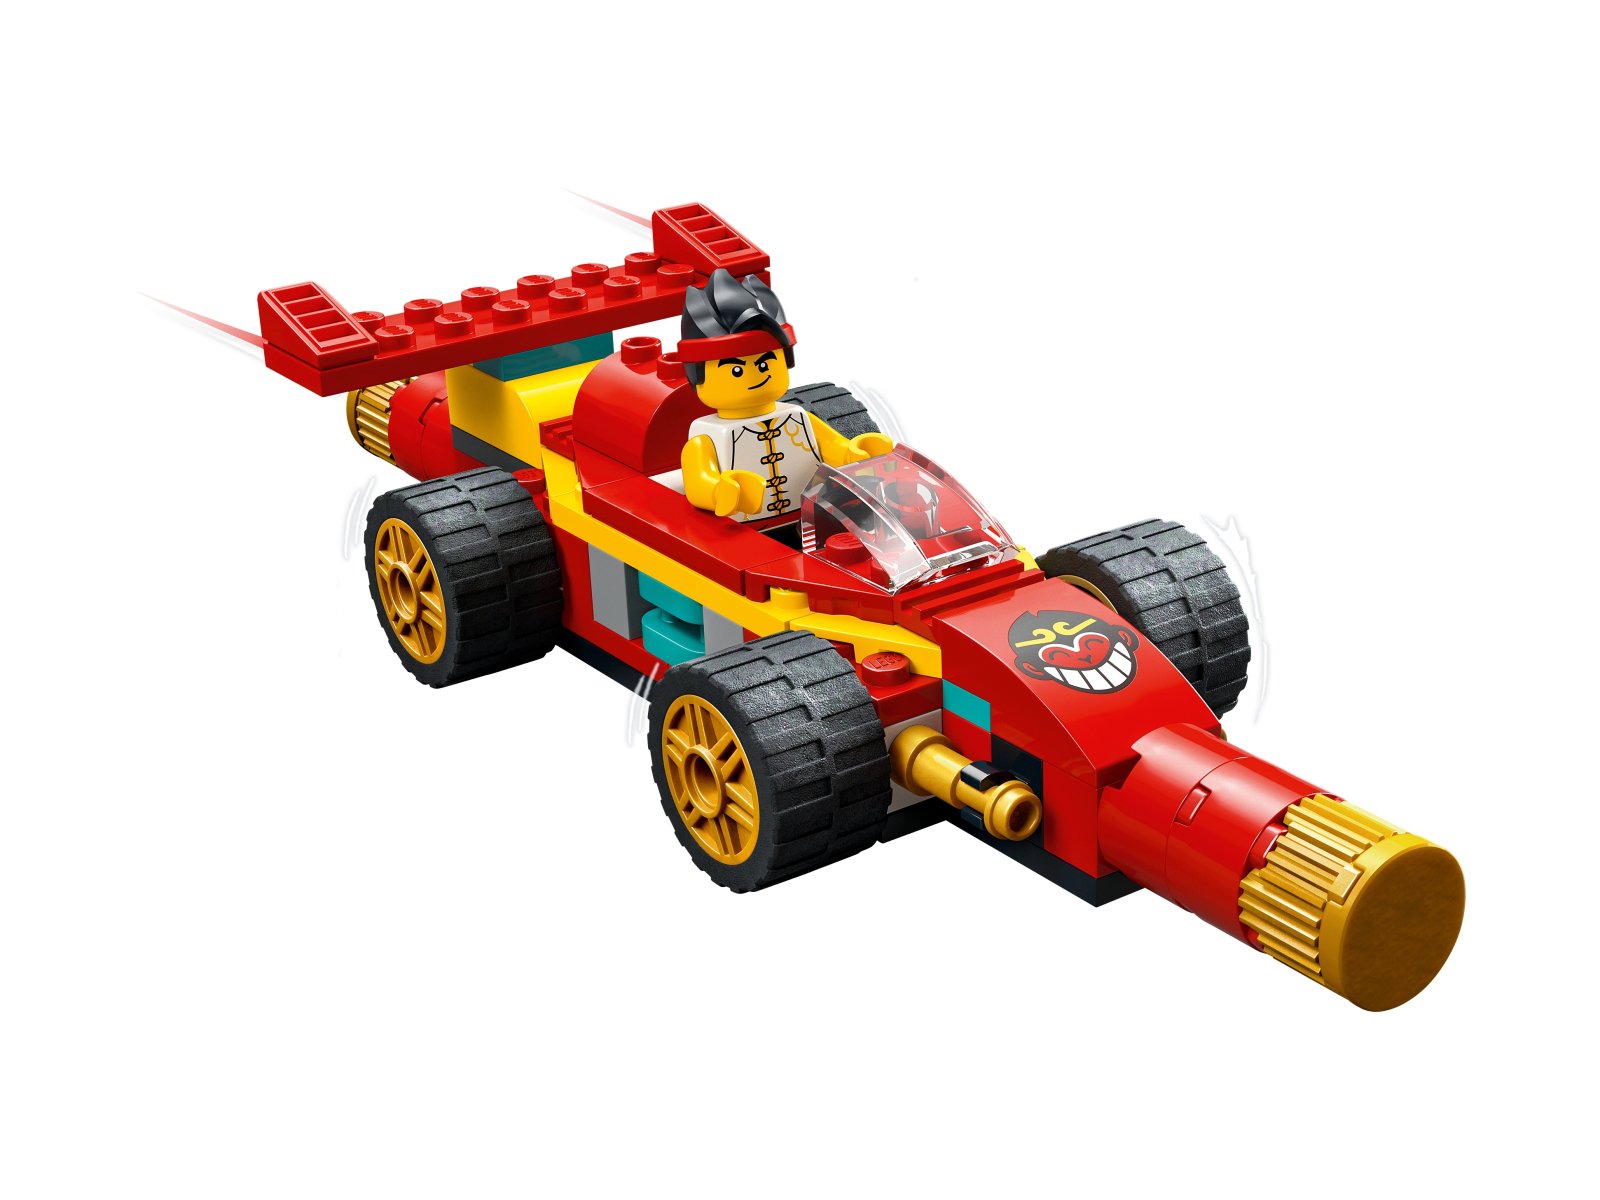 LEGO Monkie Kid 80030 Modele z kosturem Monkie Kida